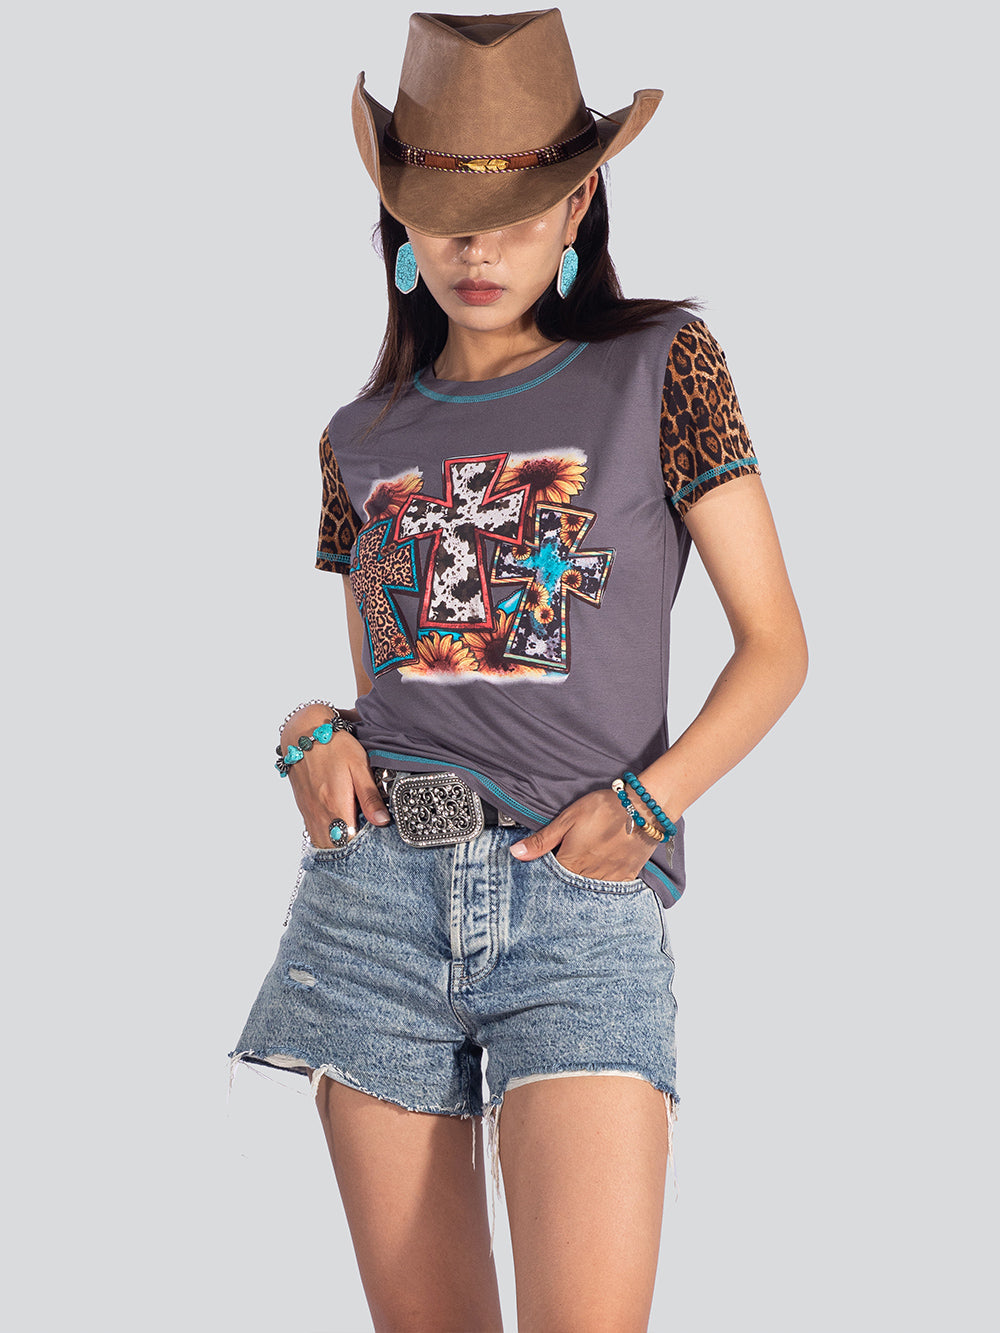 American Bling Women Cross Leopard Print Short Sleeve Shirt - Montana West World